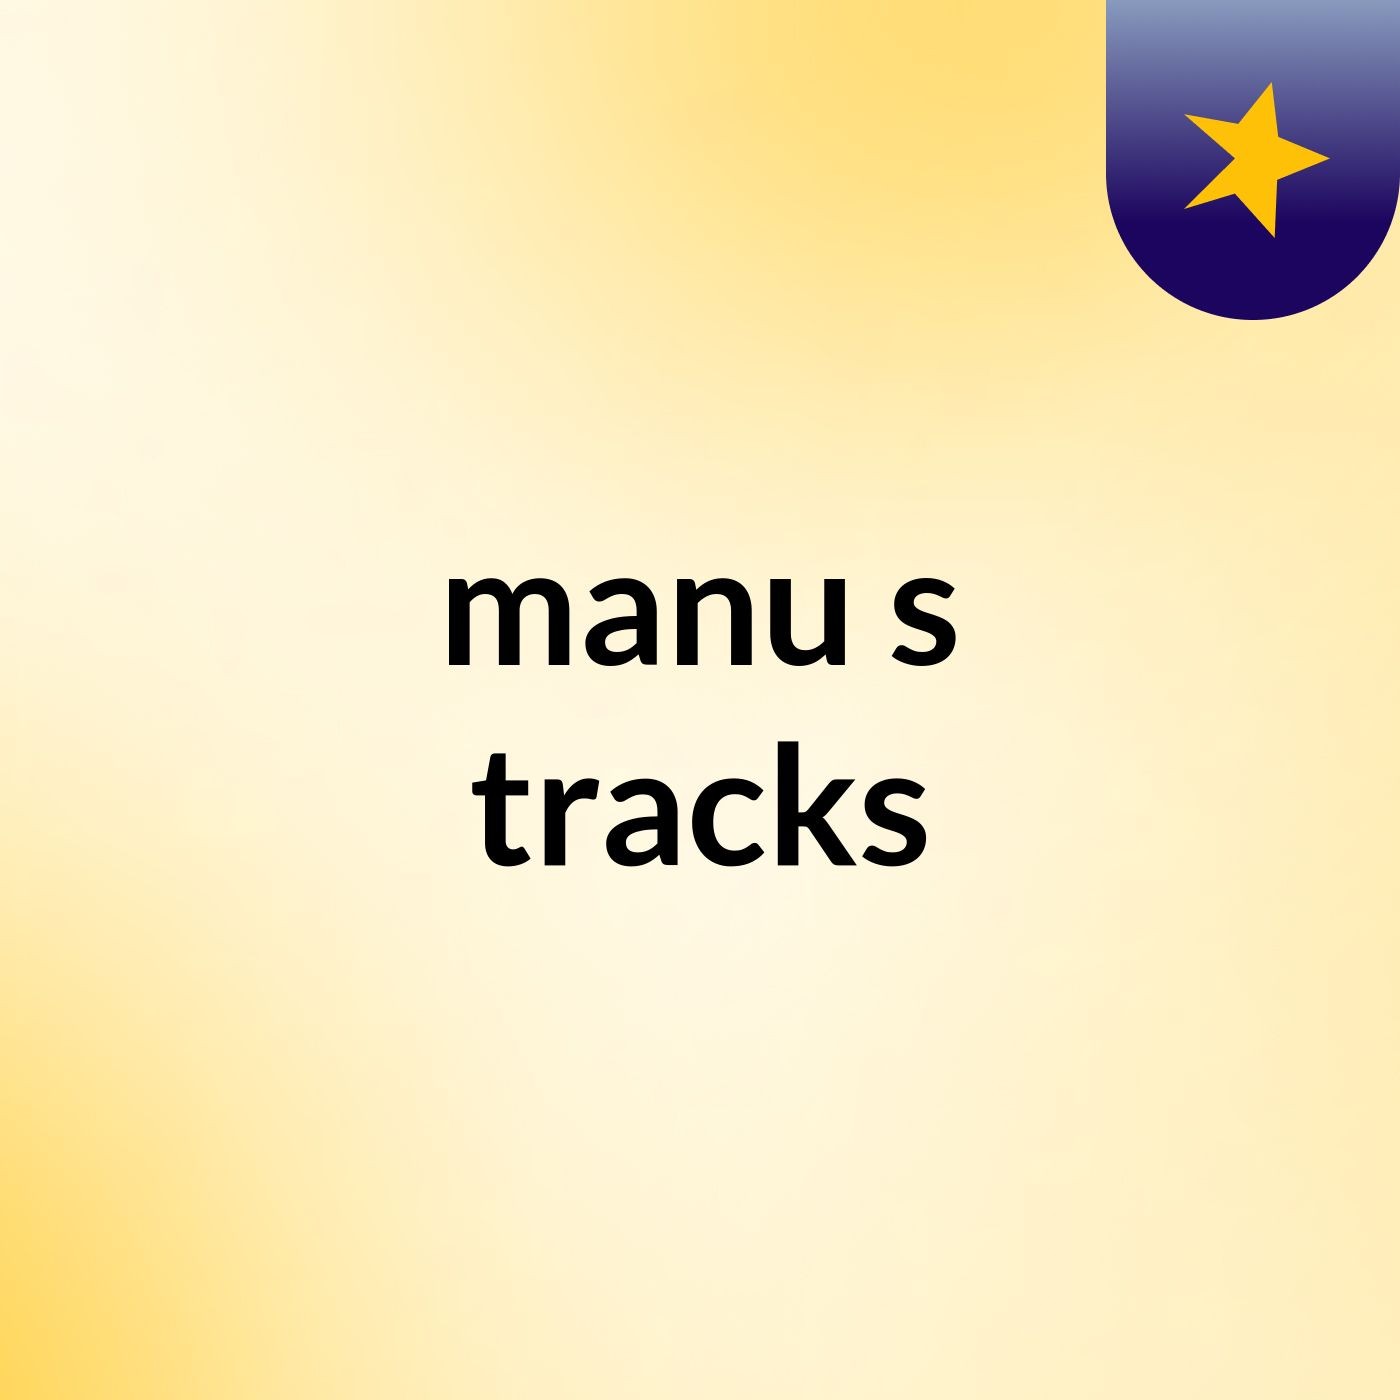 manu's tracks